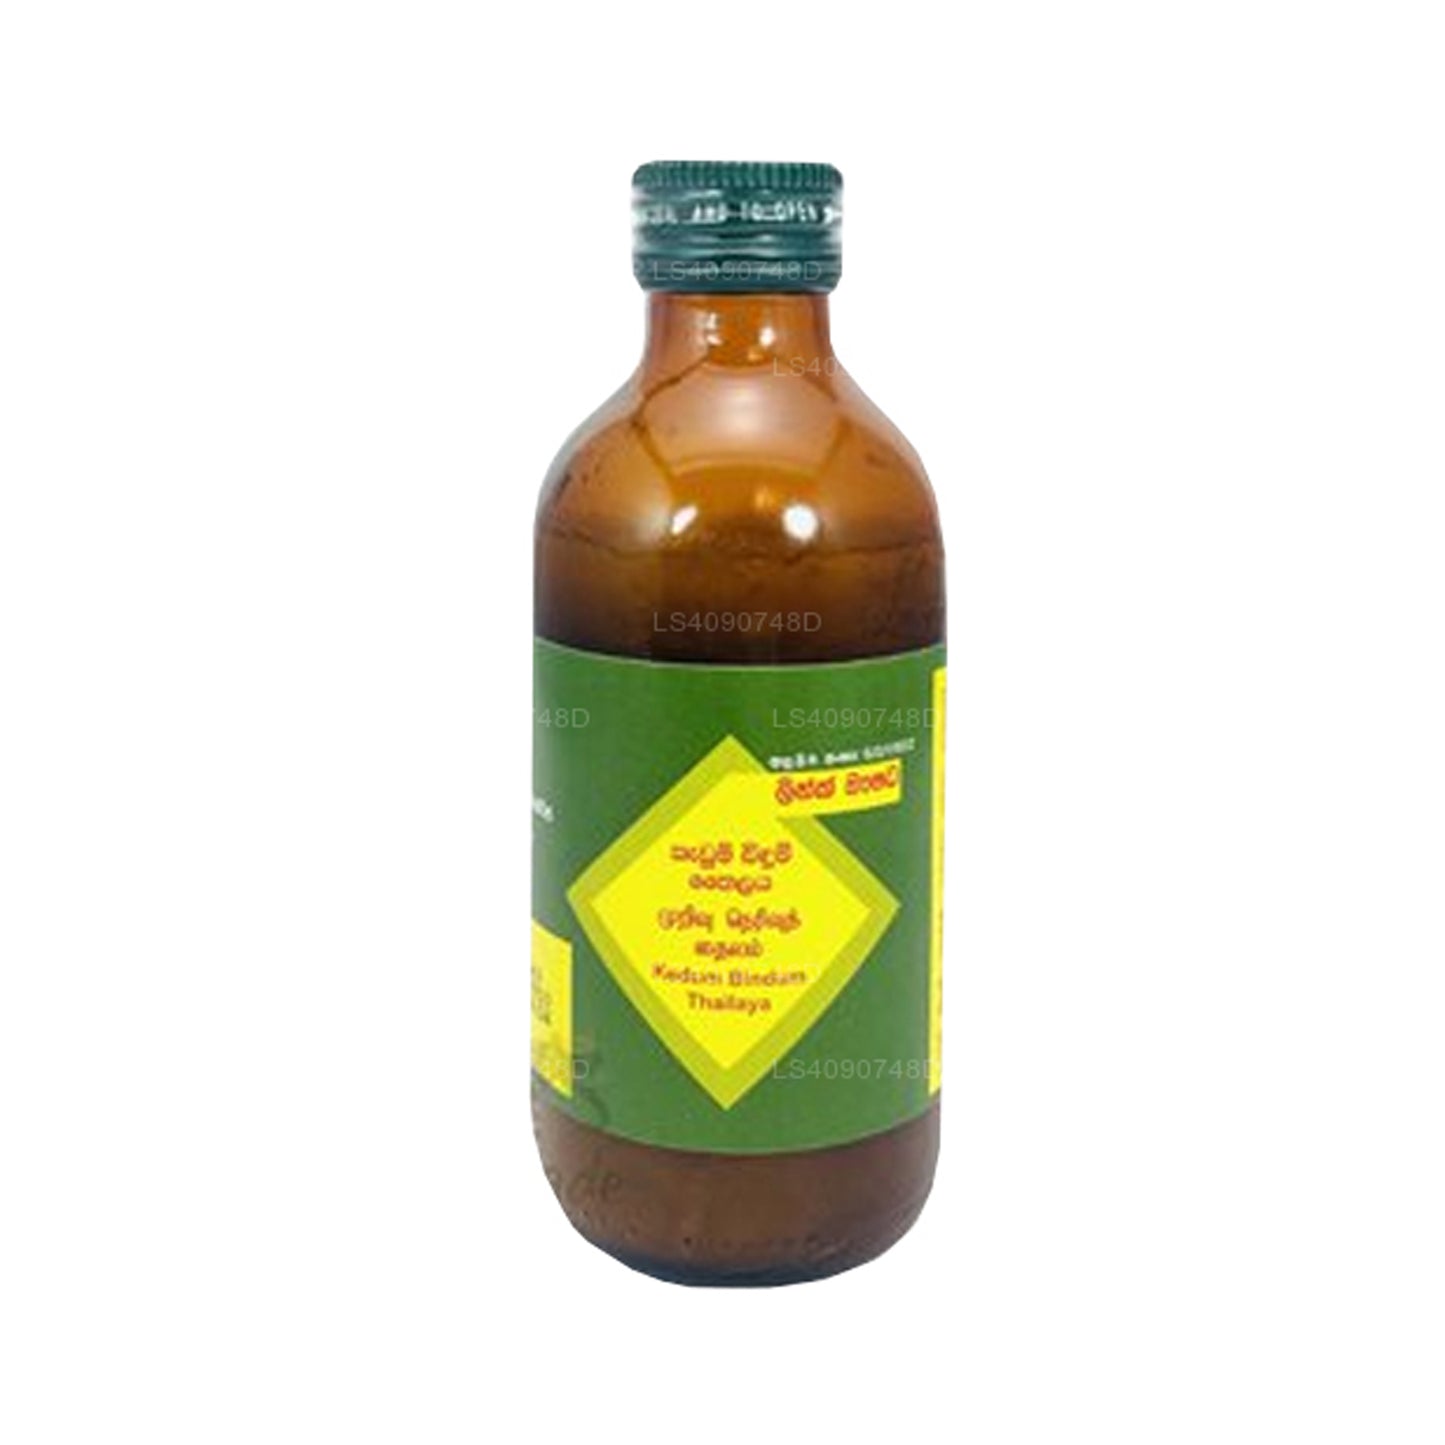 Link Kedum Bindum-olie (30 ml)